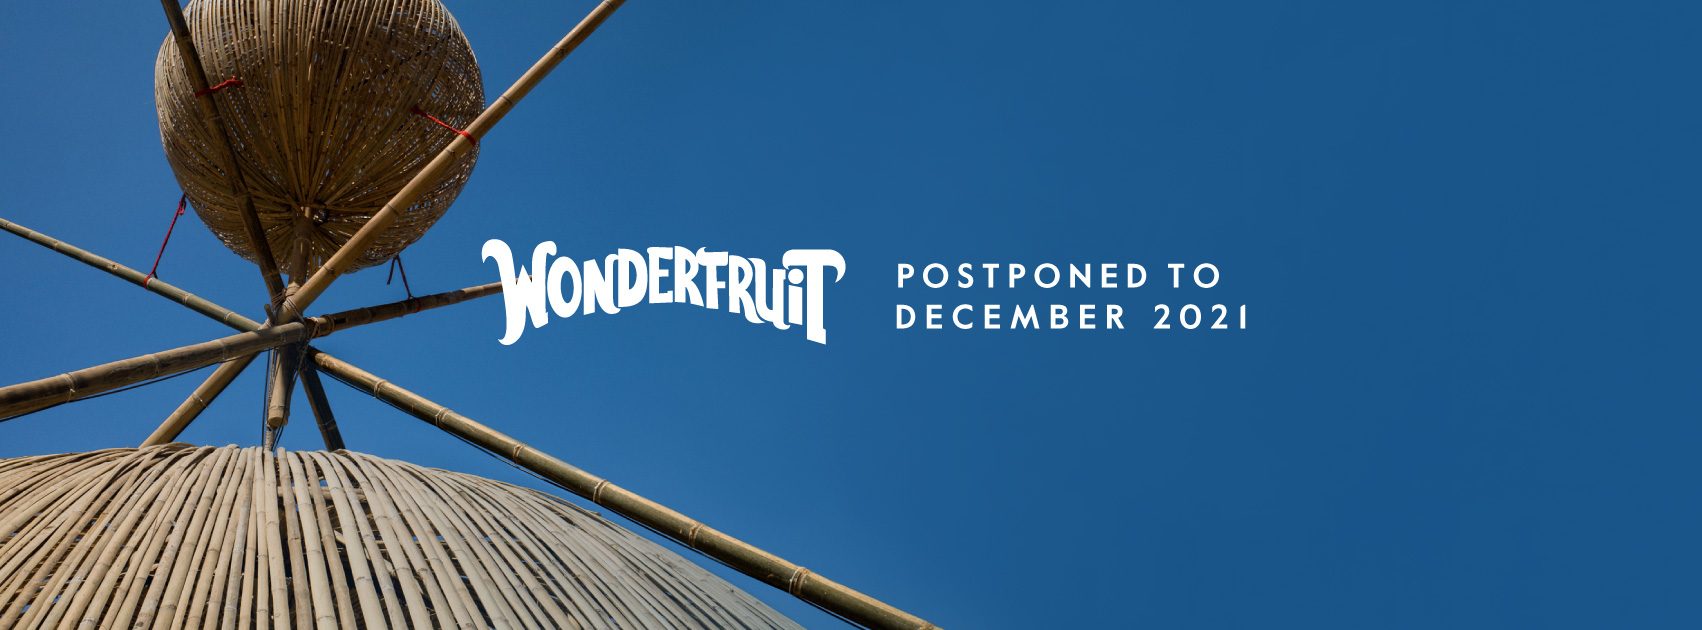 Wonderfruit Festival postponed to December 2021